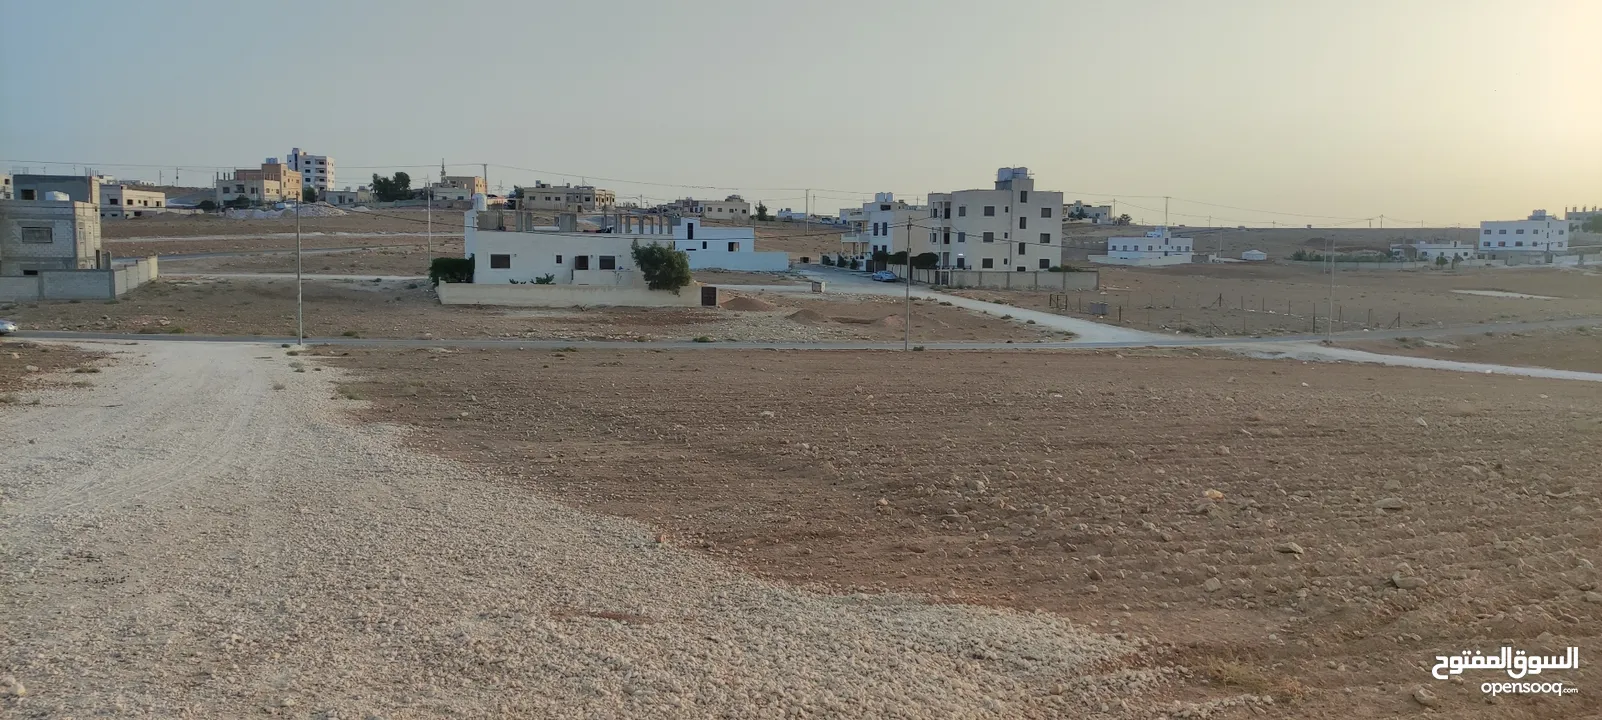 ارض للبيع شرق عمان البيضاء